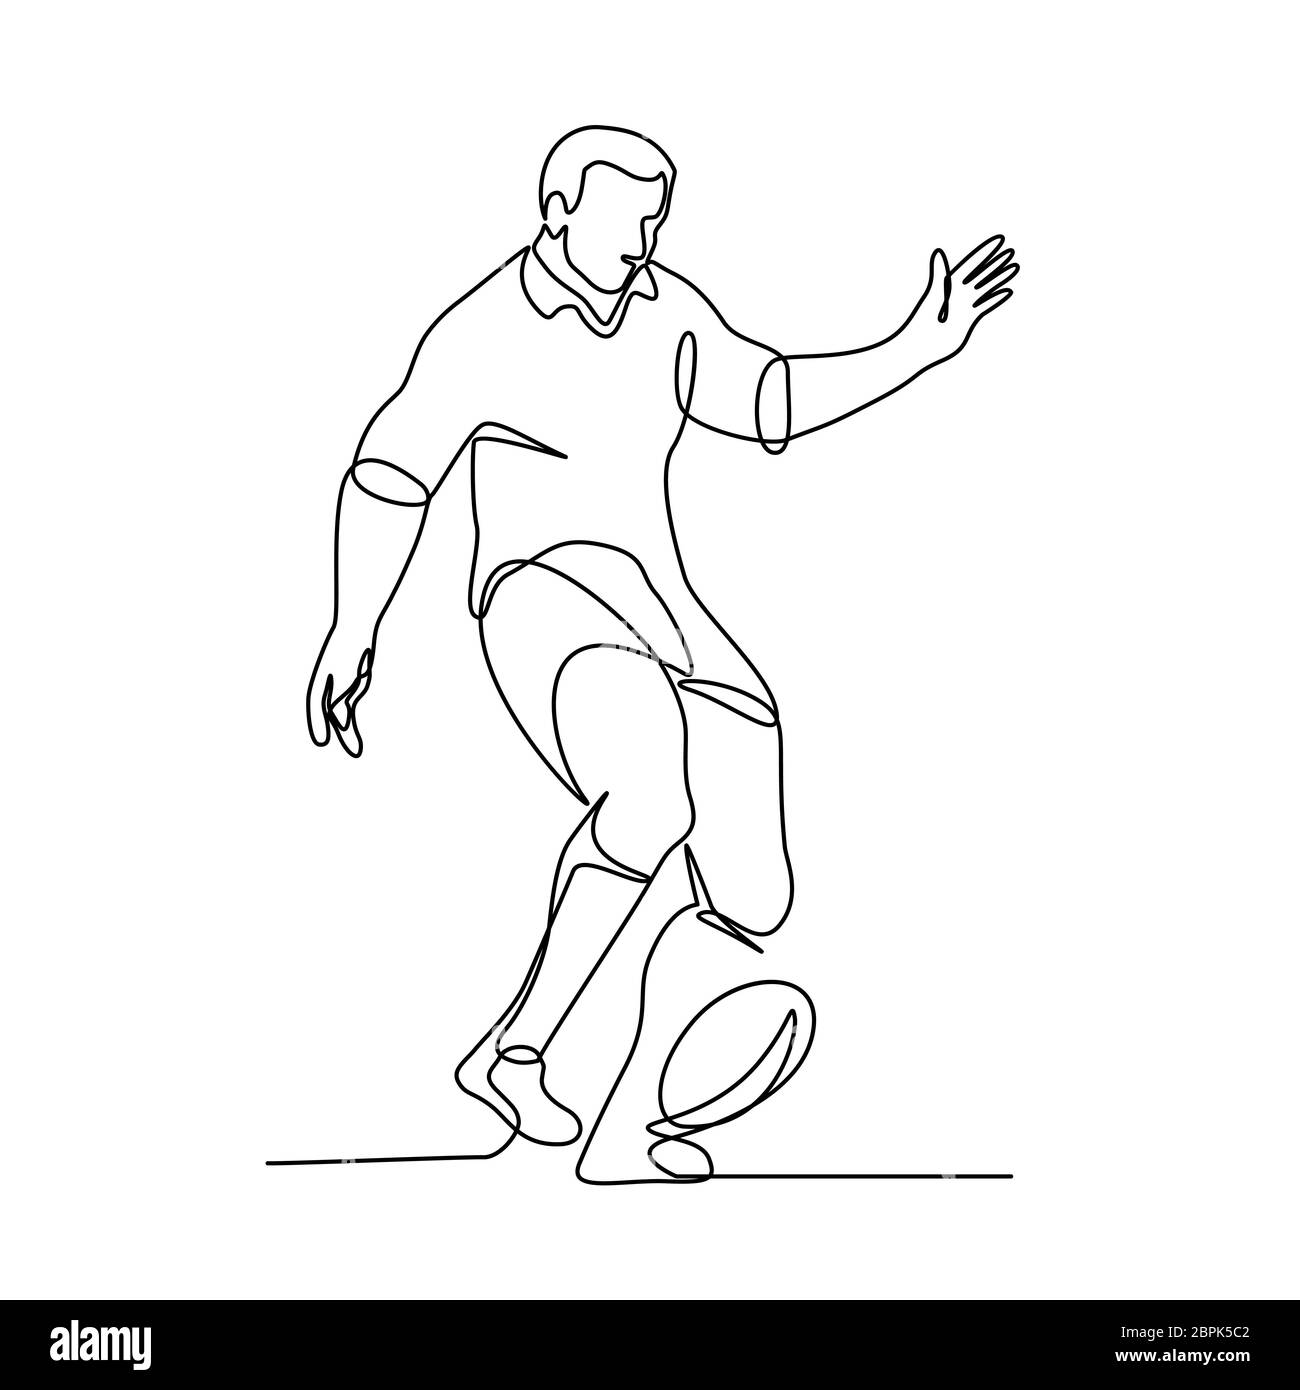 Linea continua illustrazione di un giocatore di rugby calciare il pallone per un field goal o kick-off fatto in bianco e nero in stile monolinea. Foto Stock